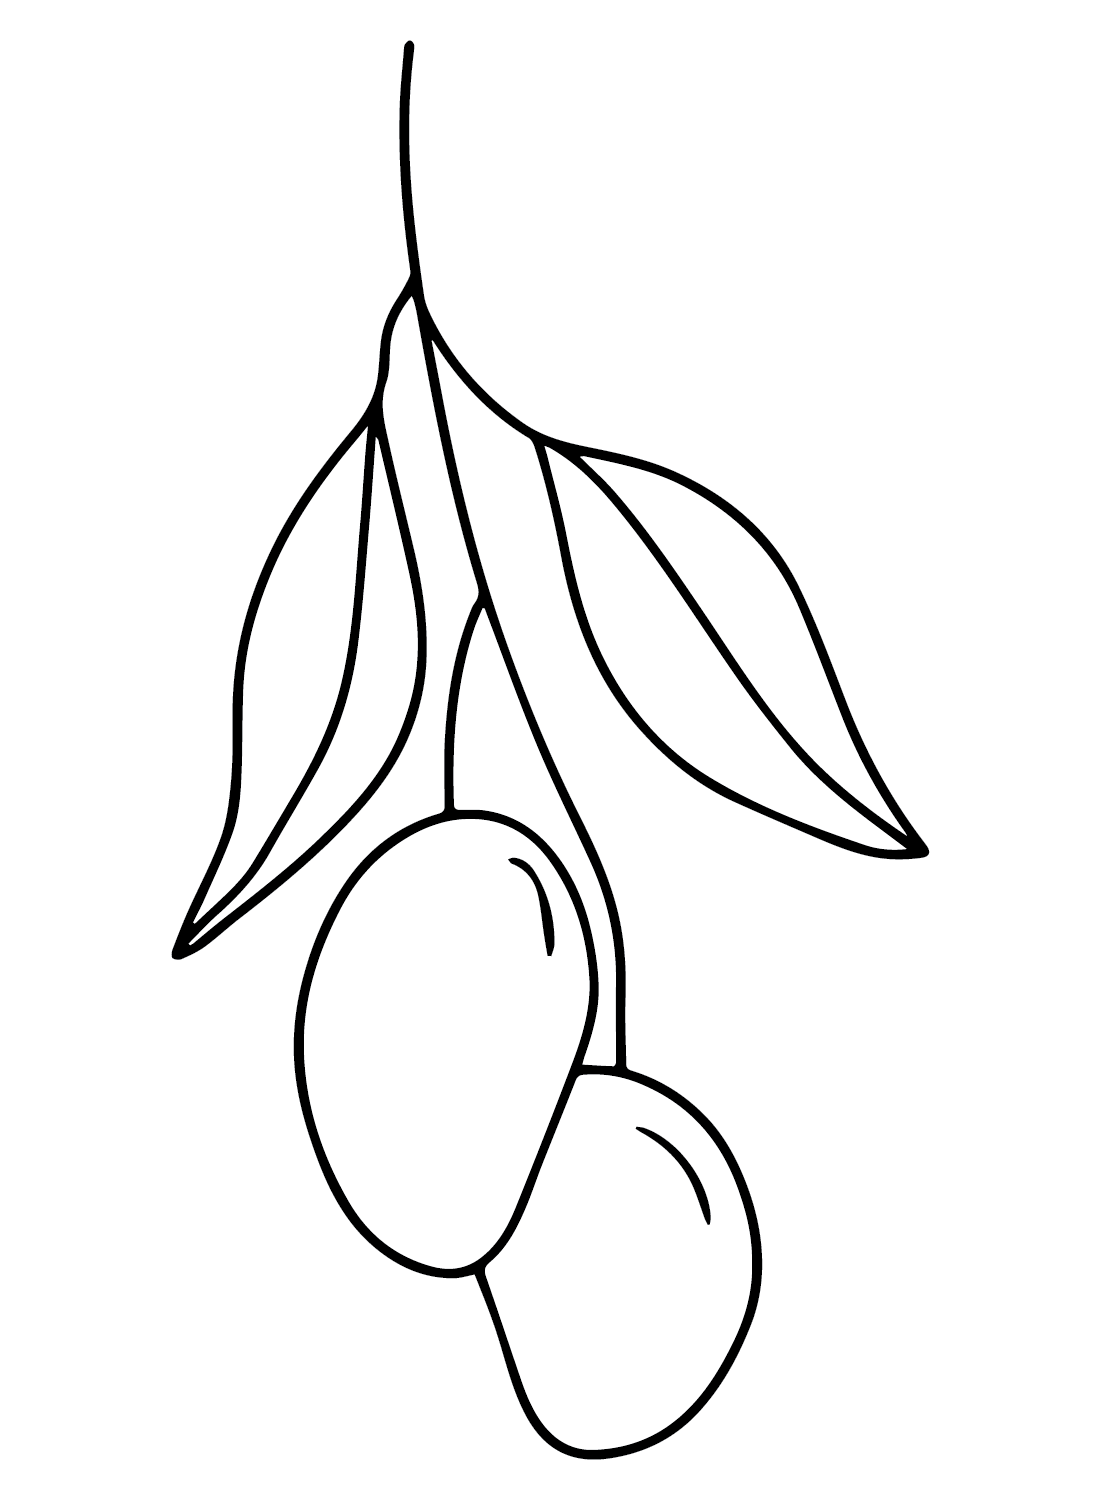 Big mango sketch art design - Designsketch.in